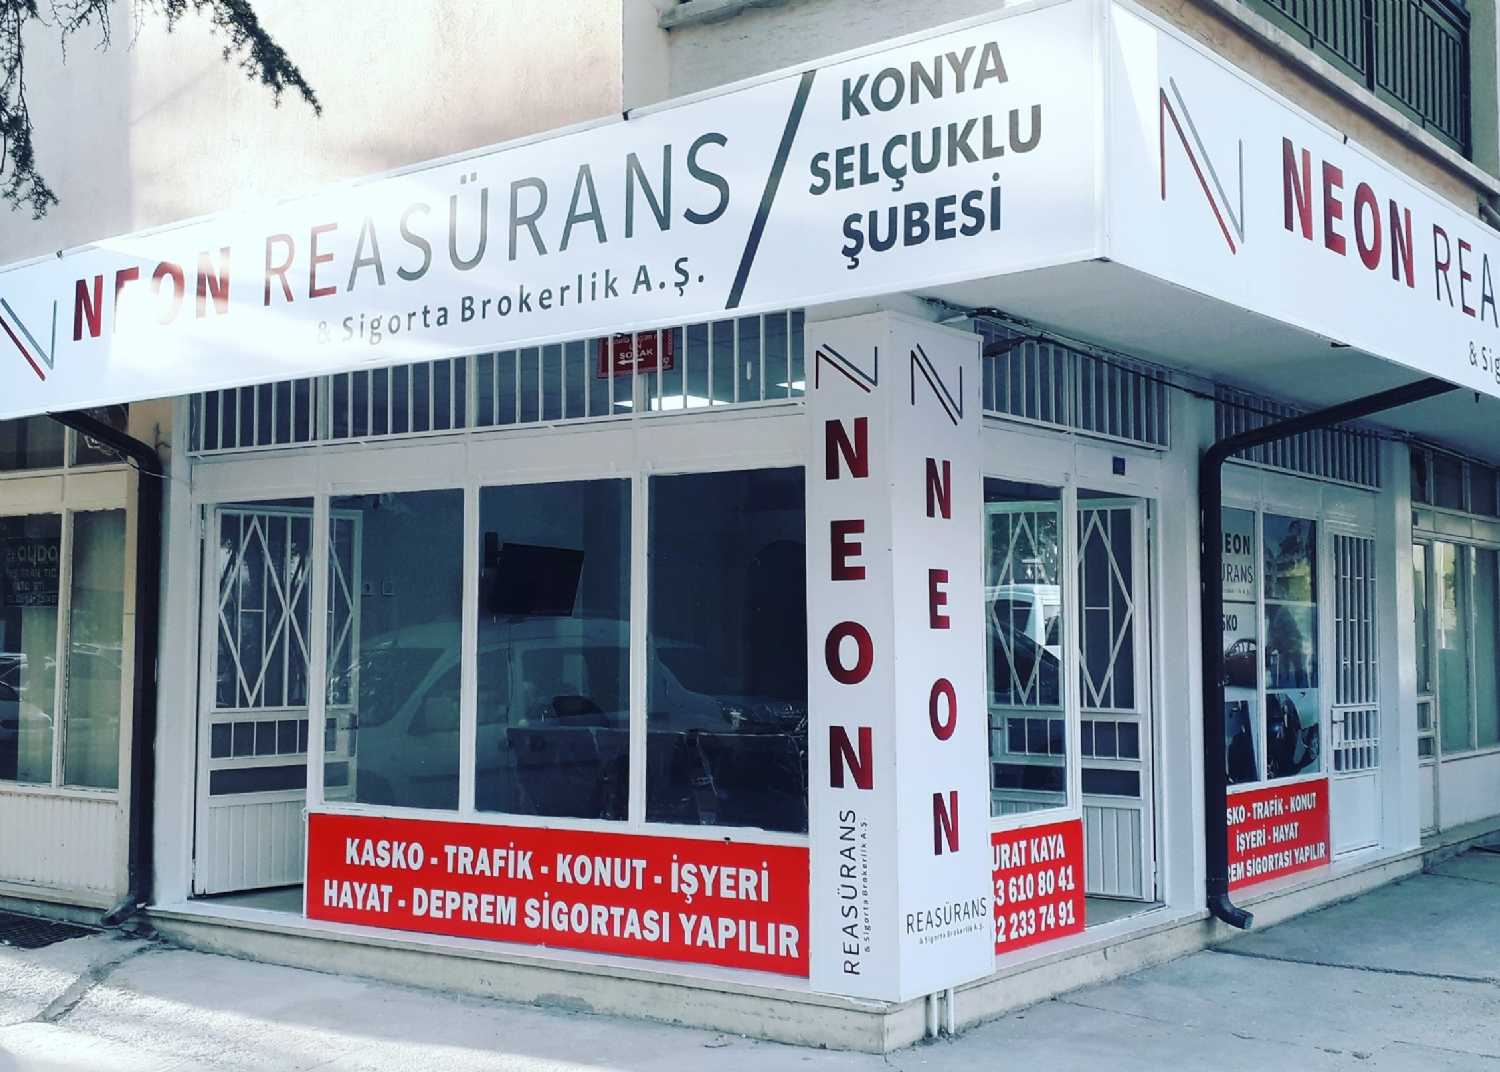 Neon Reasürans & Sigorta Brokerlik A.Ş Konya Selçuklu Şubesi Logo